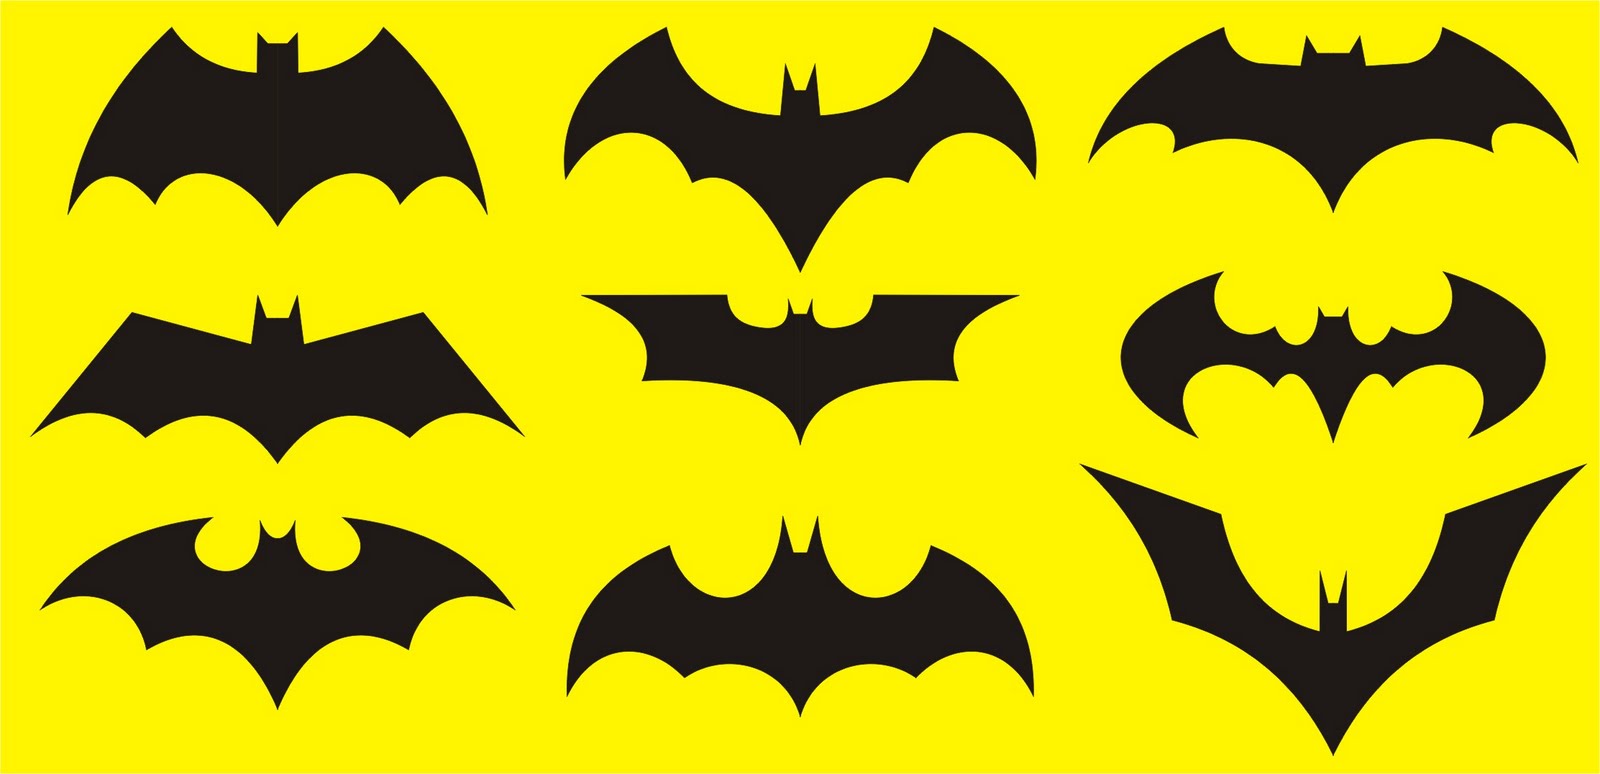 1000+ images about Batman